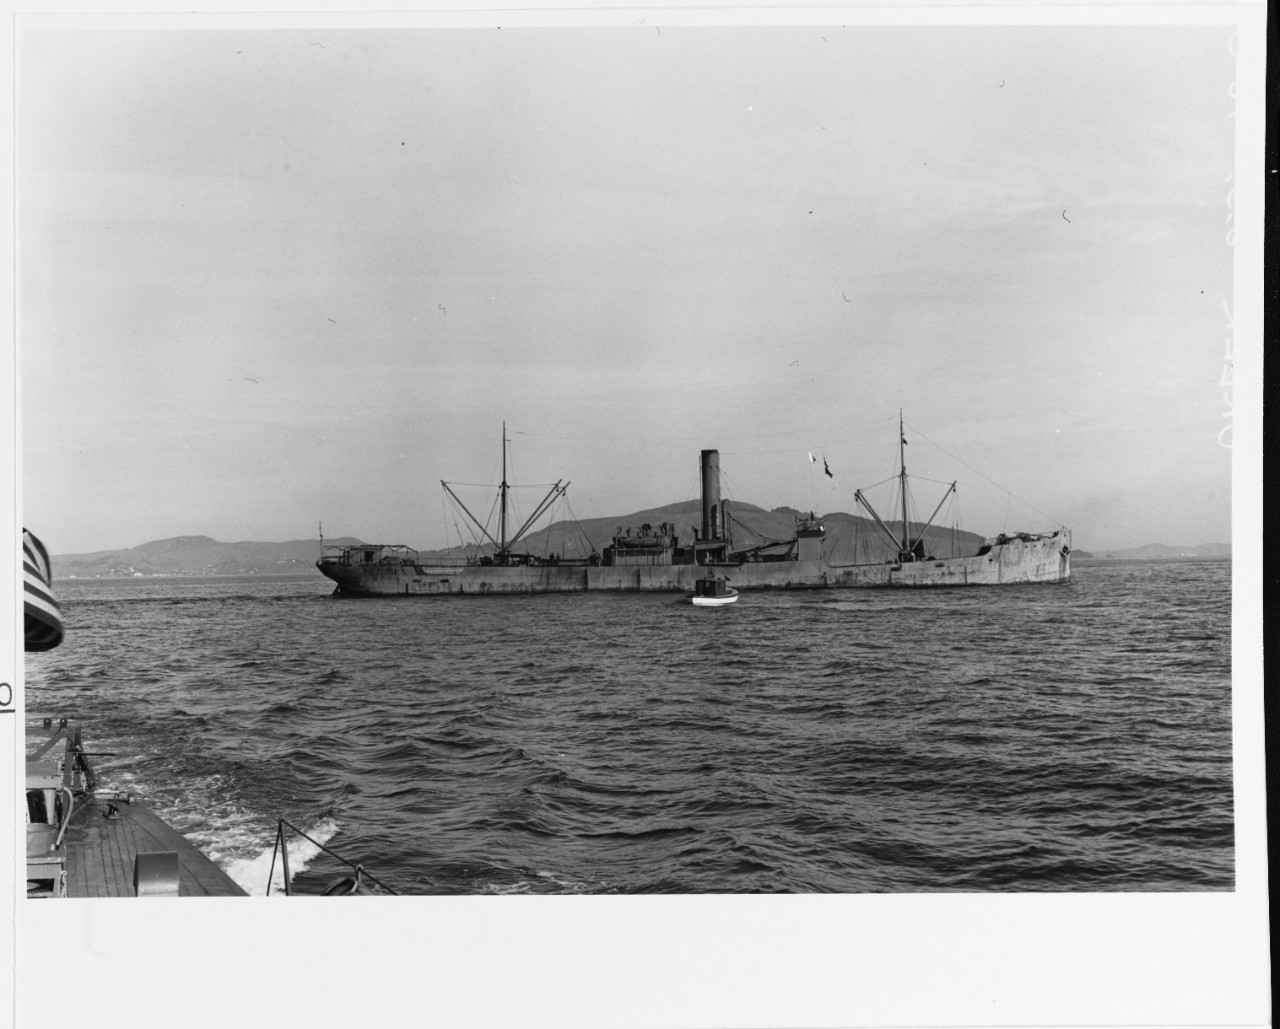 S.S. IGOR (Greek Merchant Cargo Ship, 1907-1952)